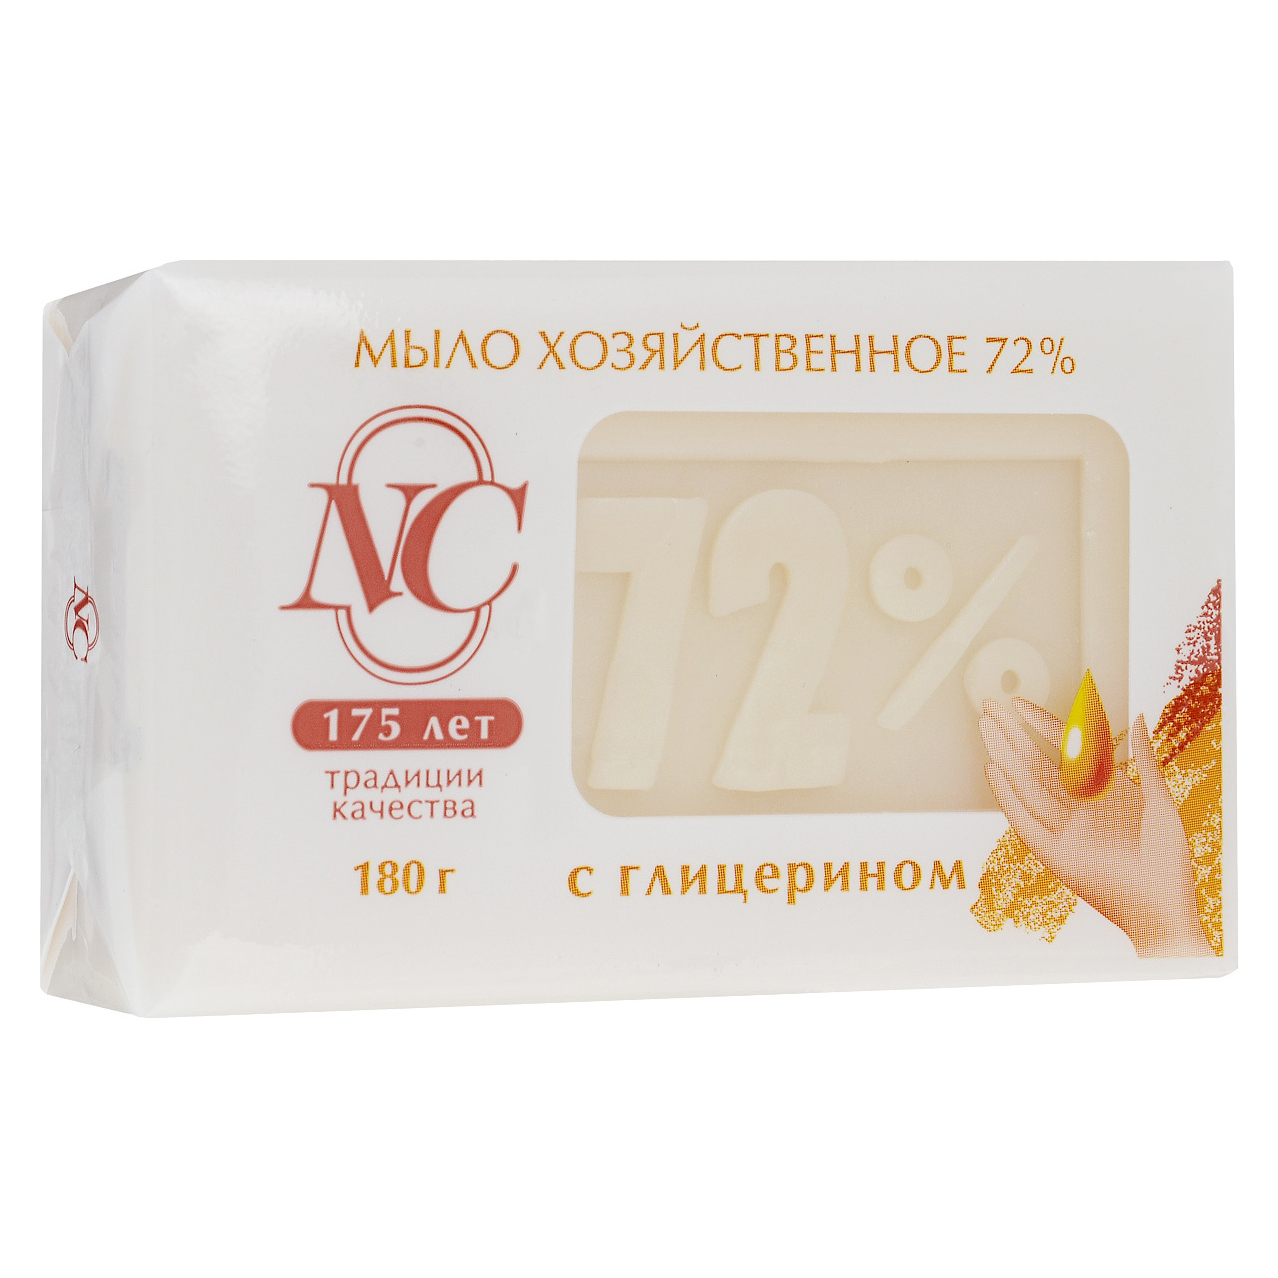 Традиционное хозяйственное мыло Невская косметика 72% с глицерином 180 г